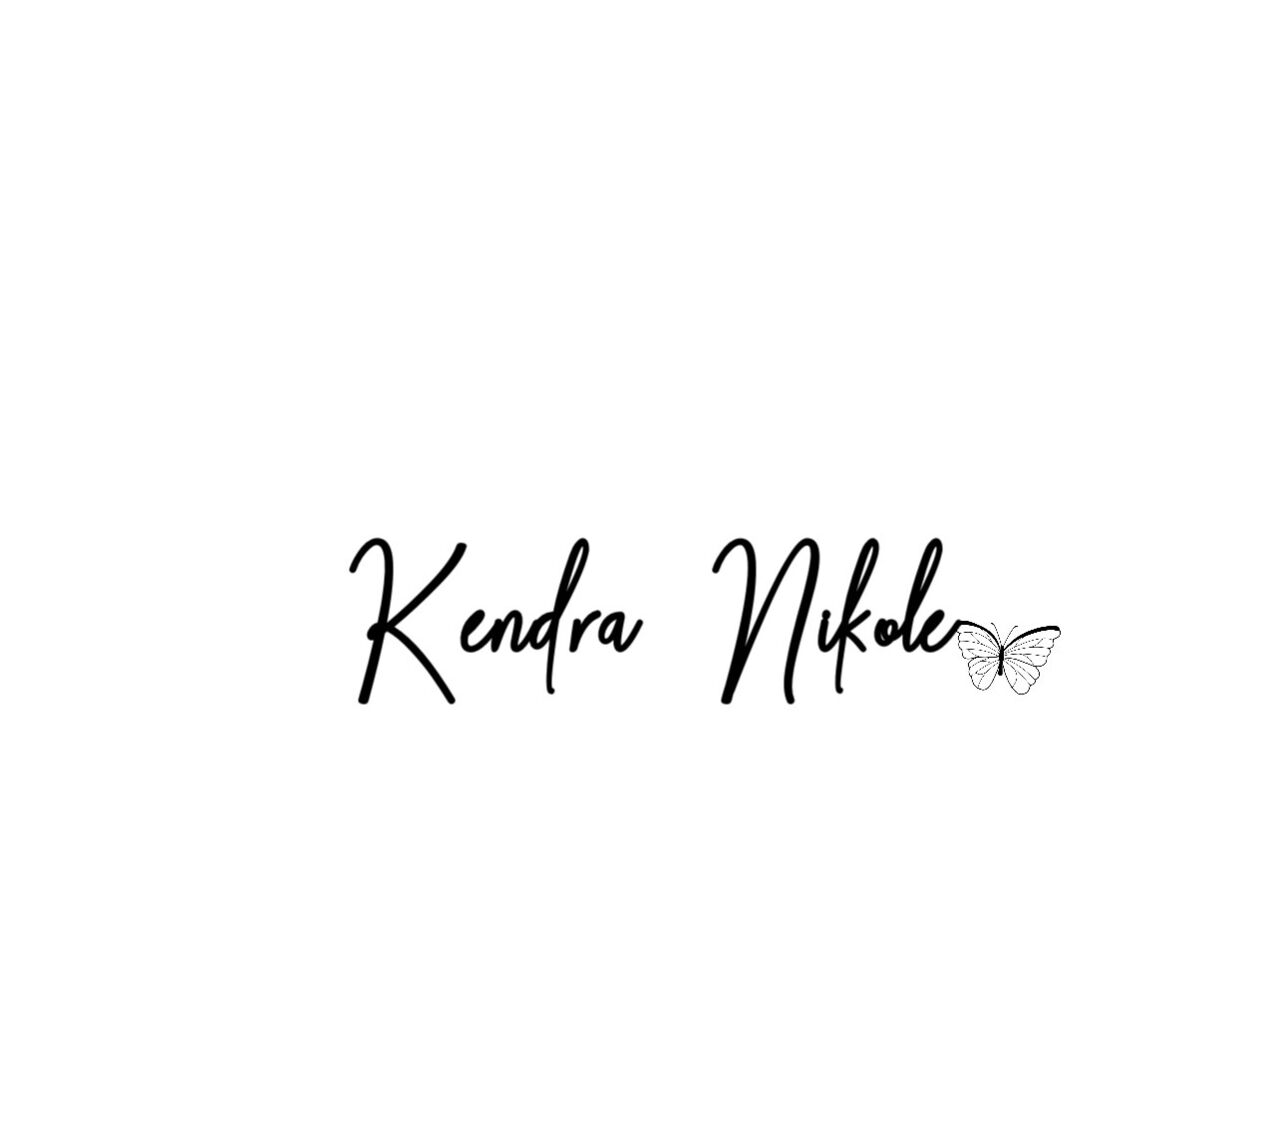 See Kendra Nikole profile